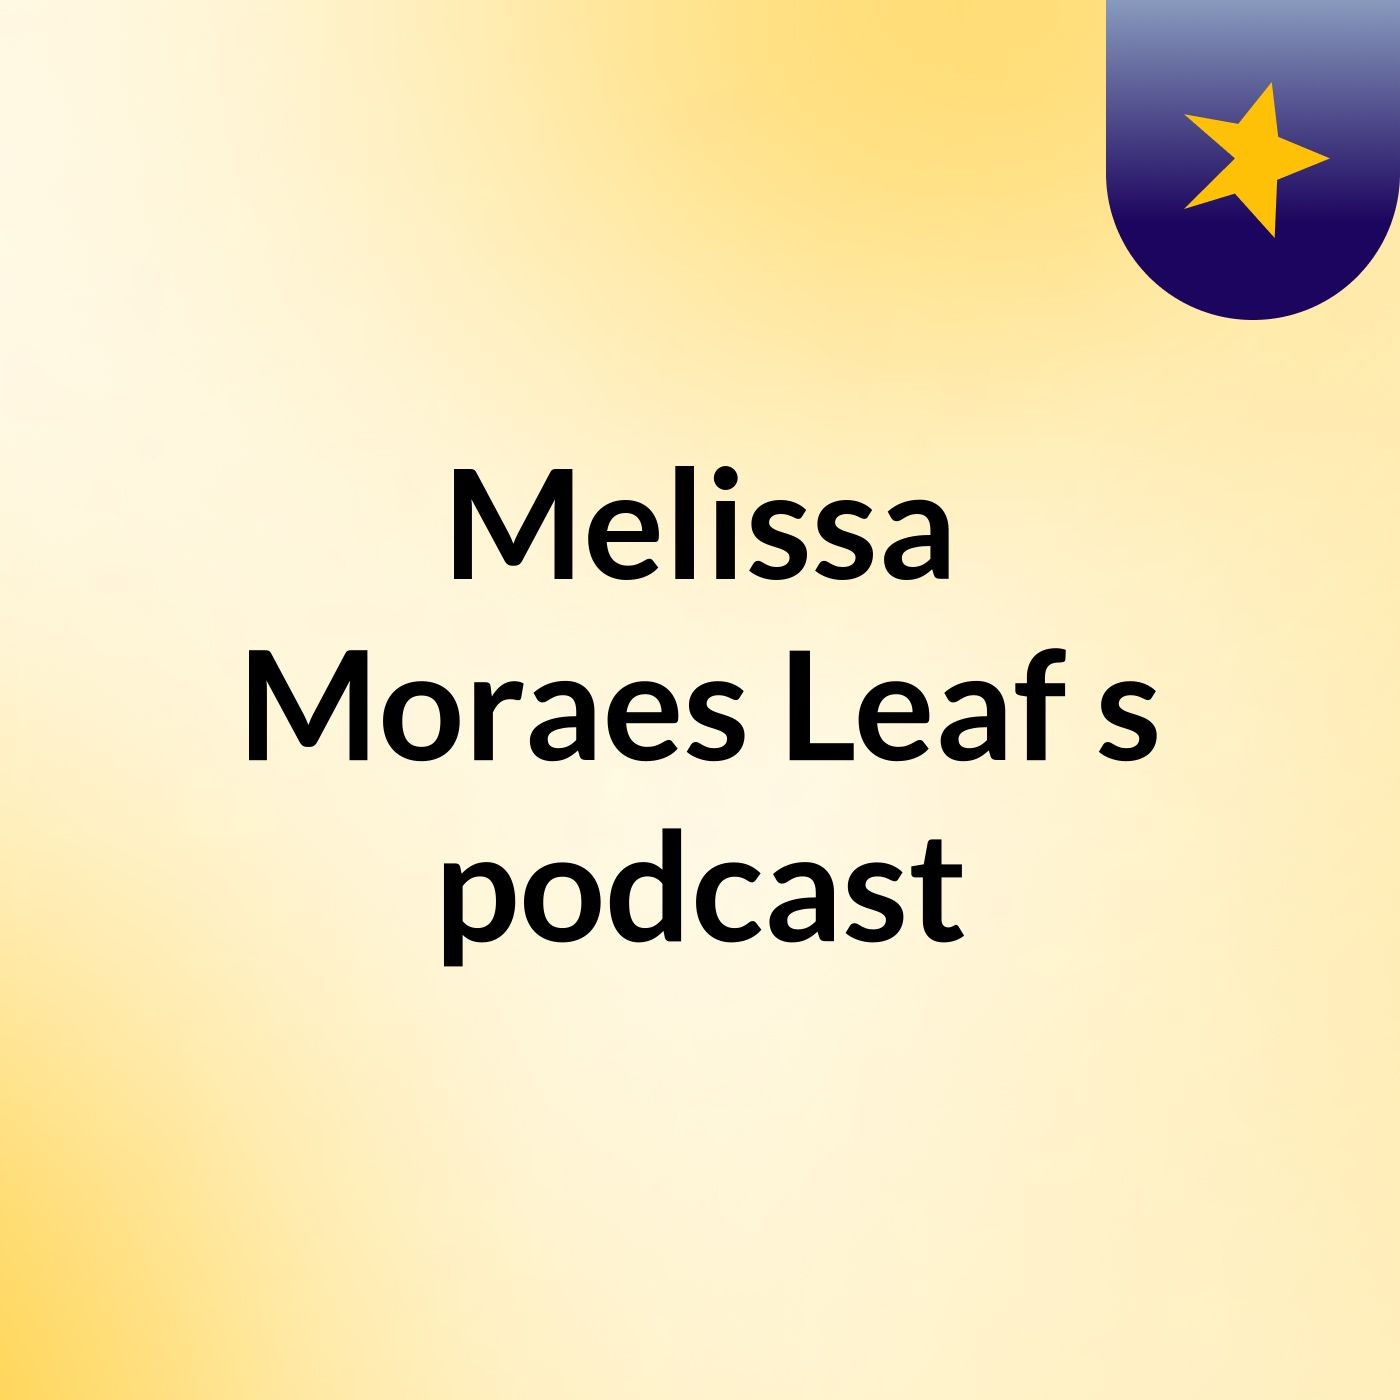 Melissa Moraes Leaf's podcast